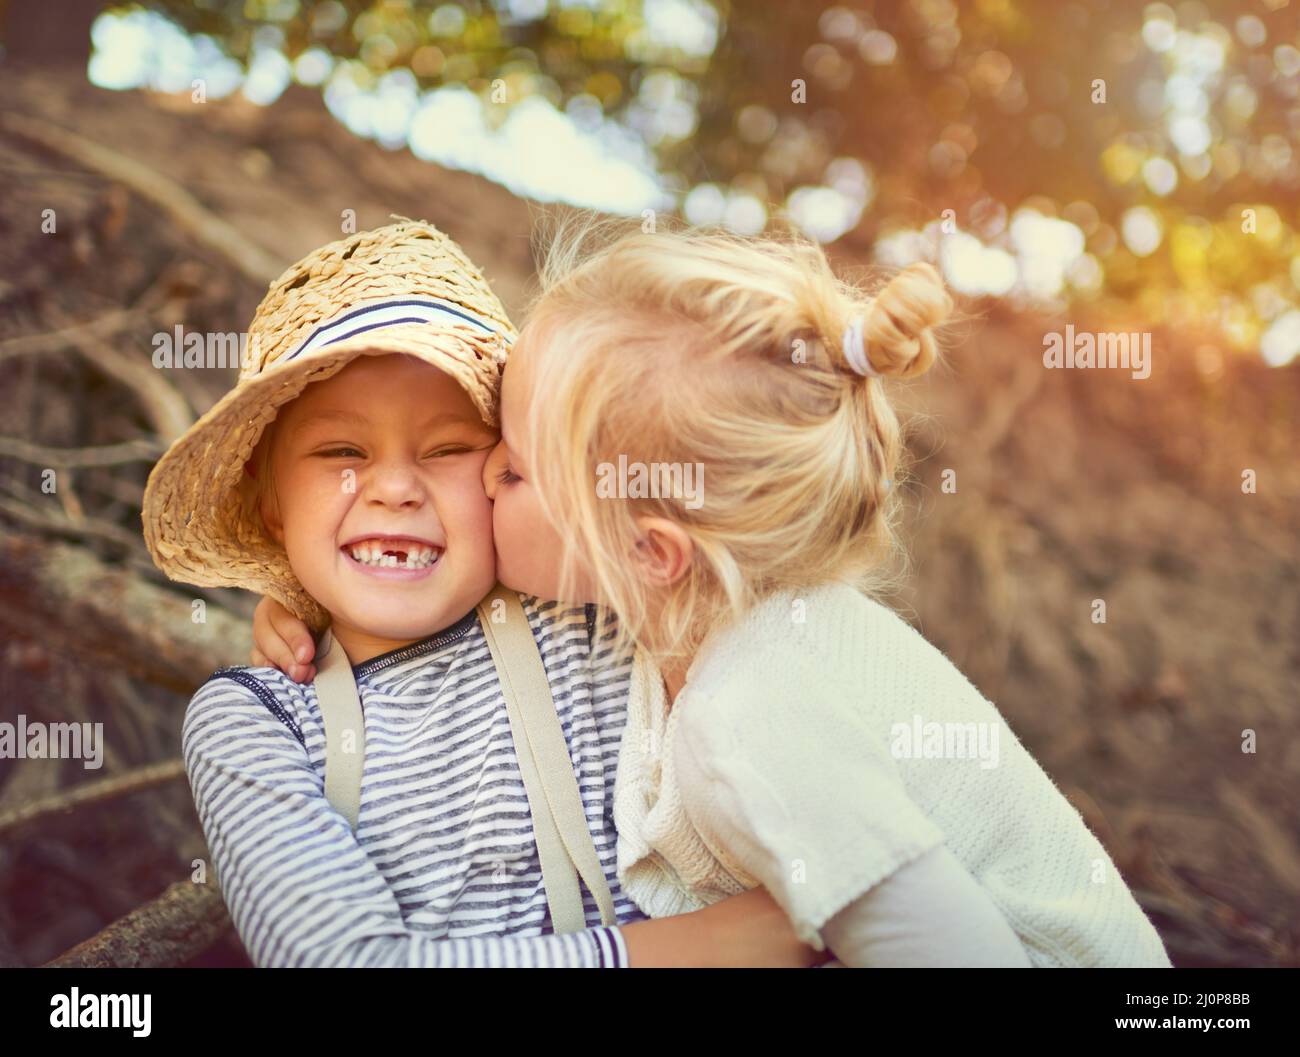 Le lien entre frères et sœurs est incassable. Photo de deux enfants jouant ensemble à l'extérieur. Banque D'Images